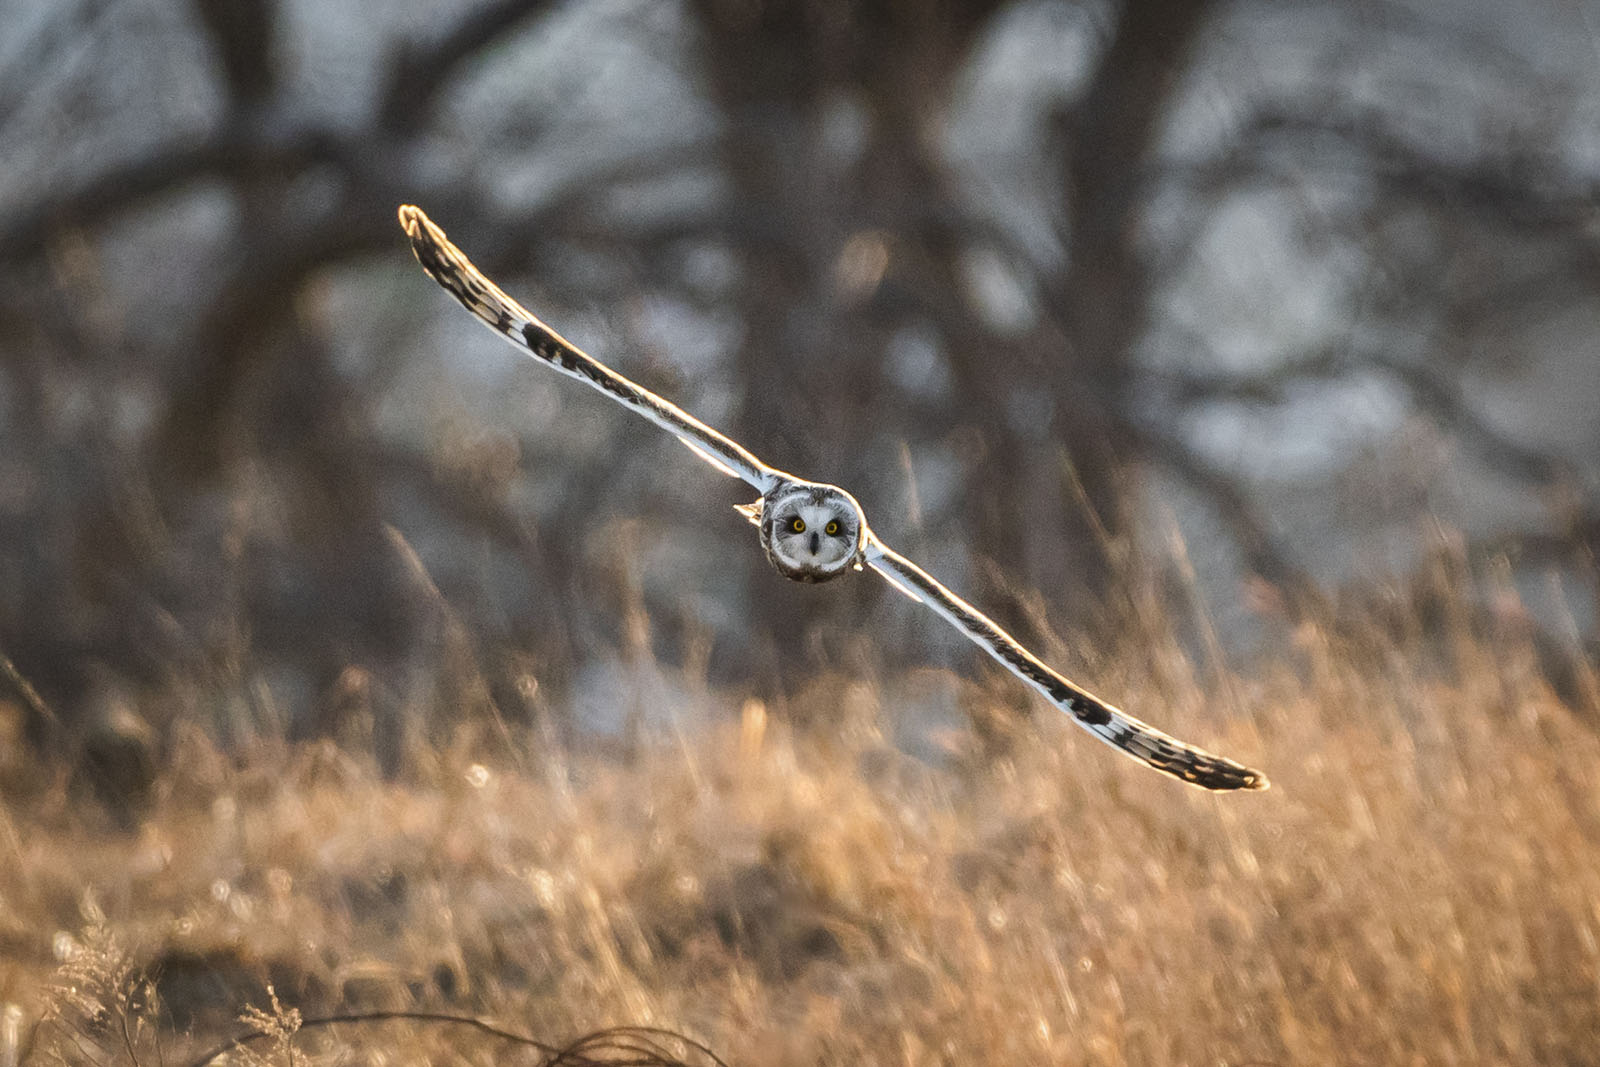 An owl, seen head-on, flies through the air.